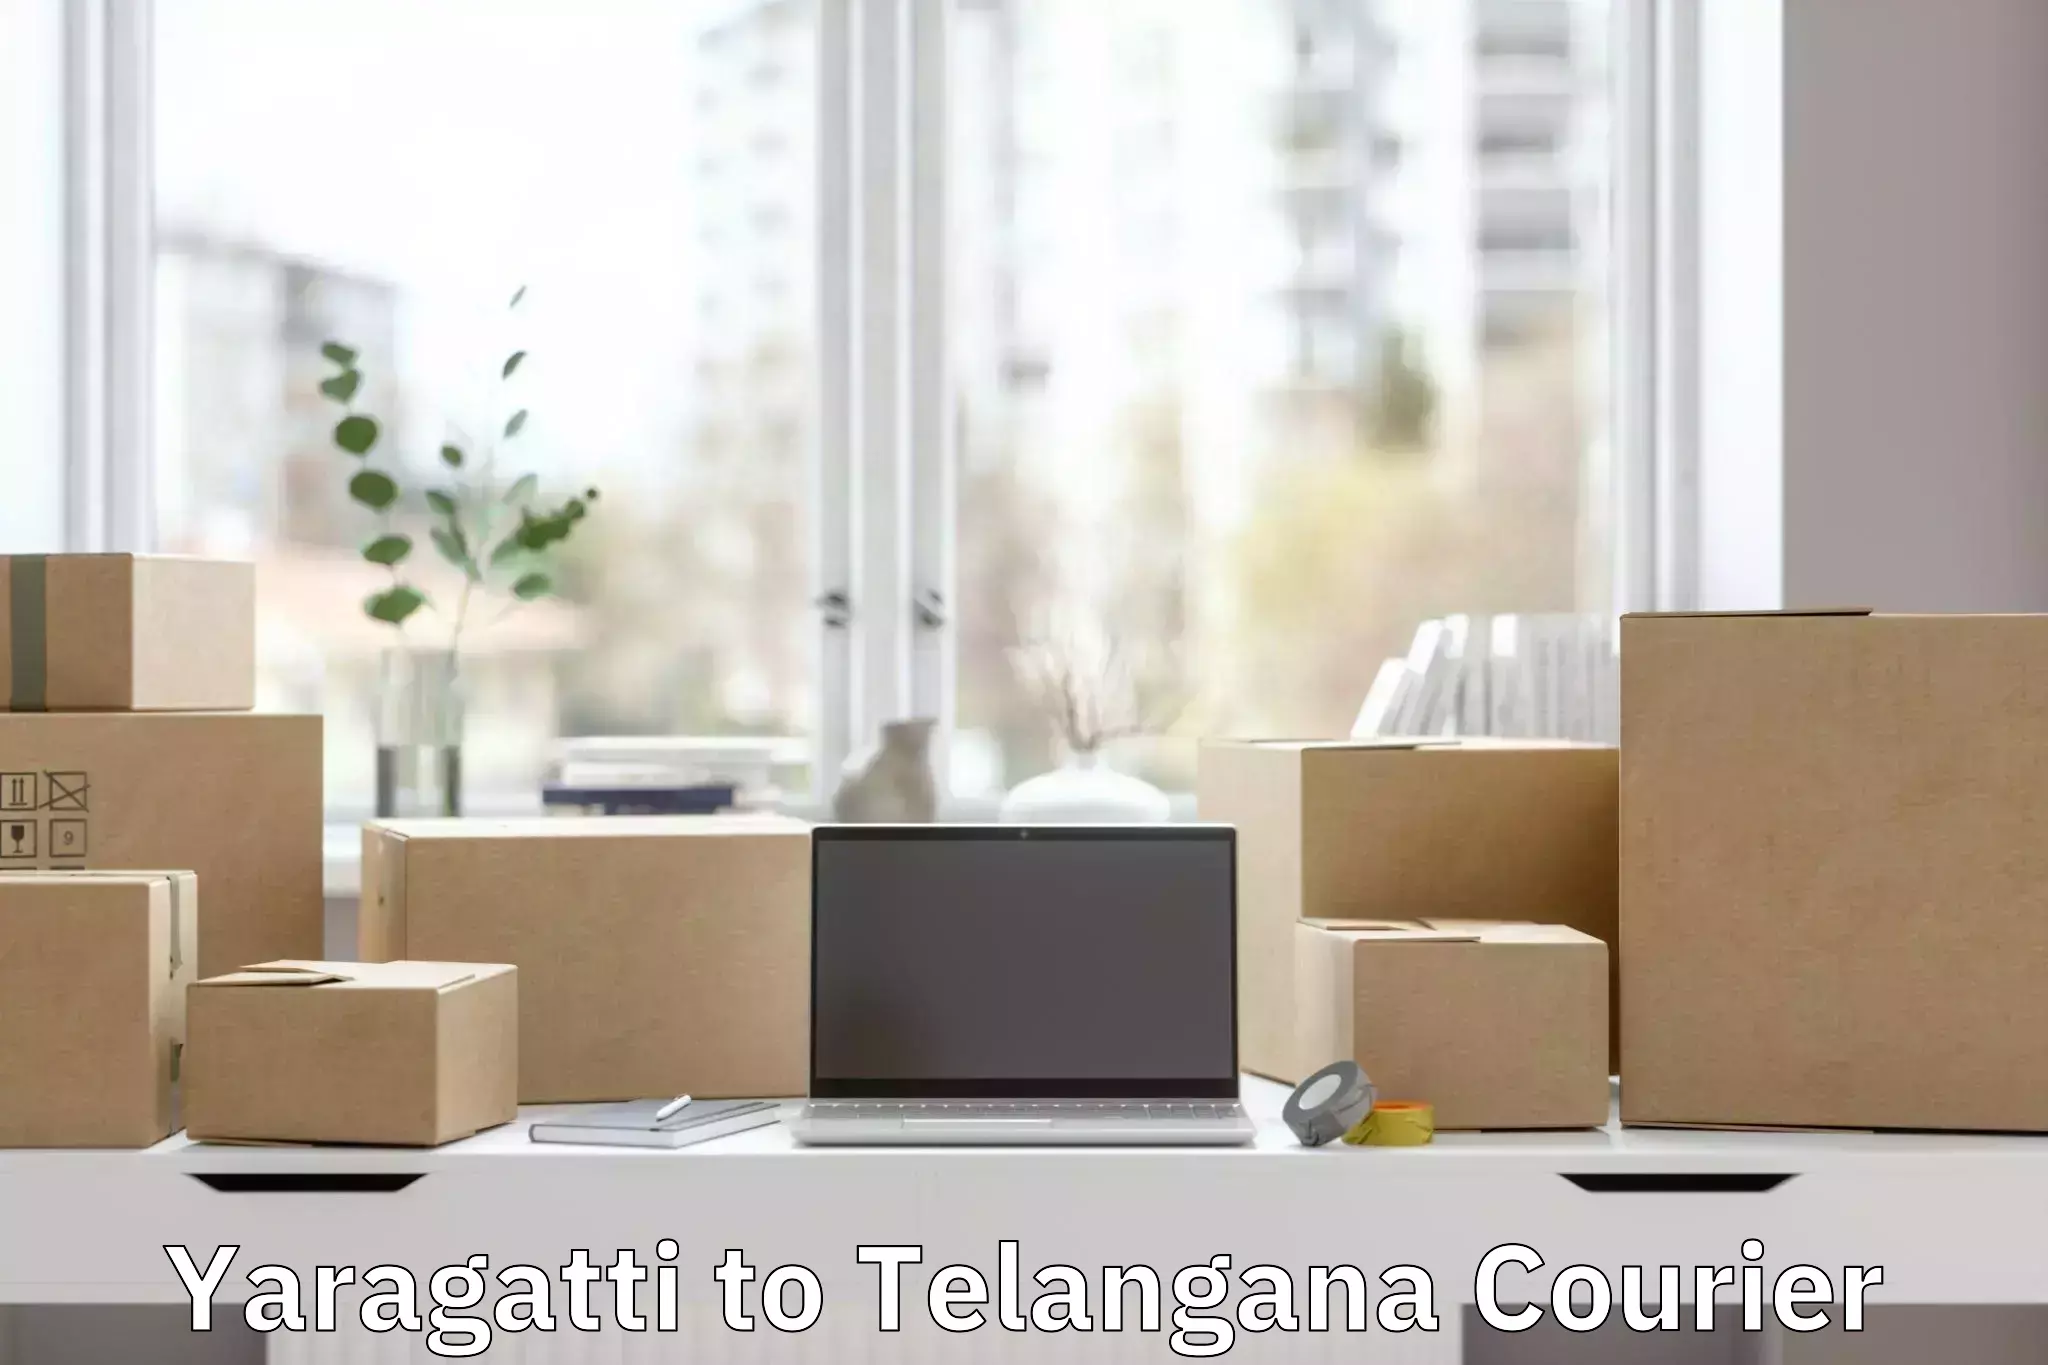 Luggage transport consulting Yaragatti to Balanagar